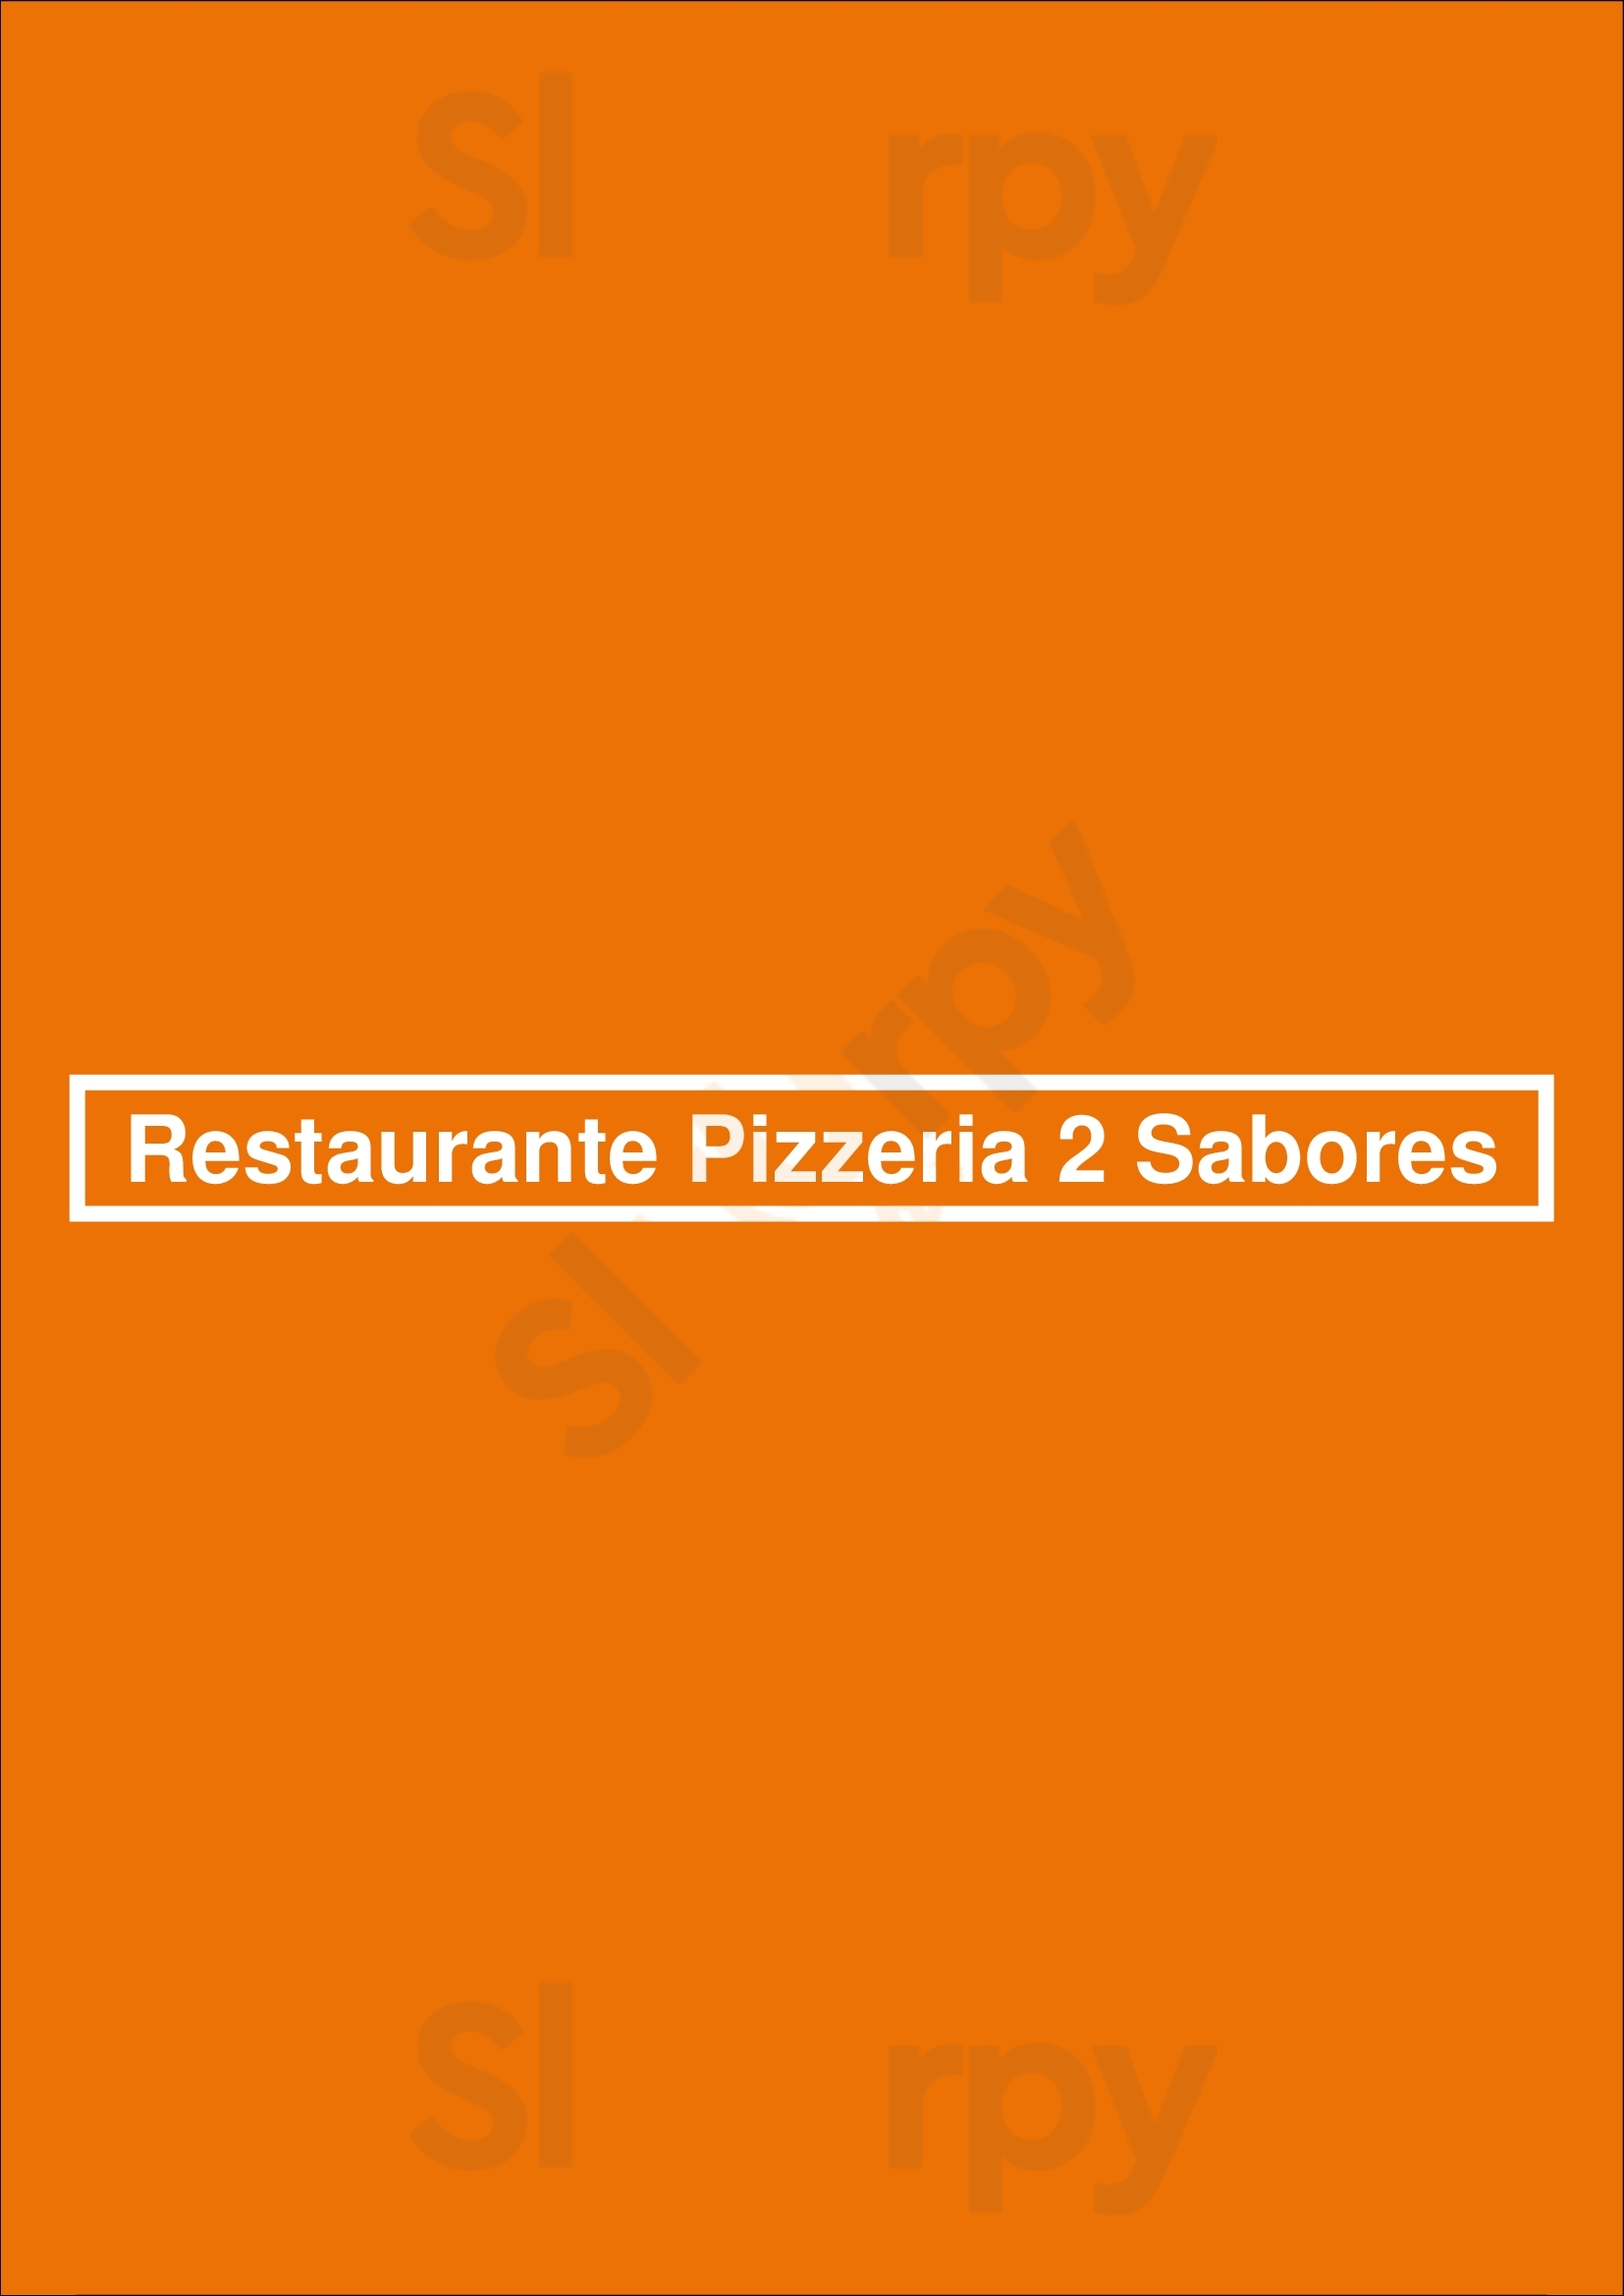 Restaurante Pizzeria 2 Sabores Porto Menu - 1